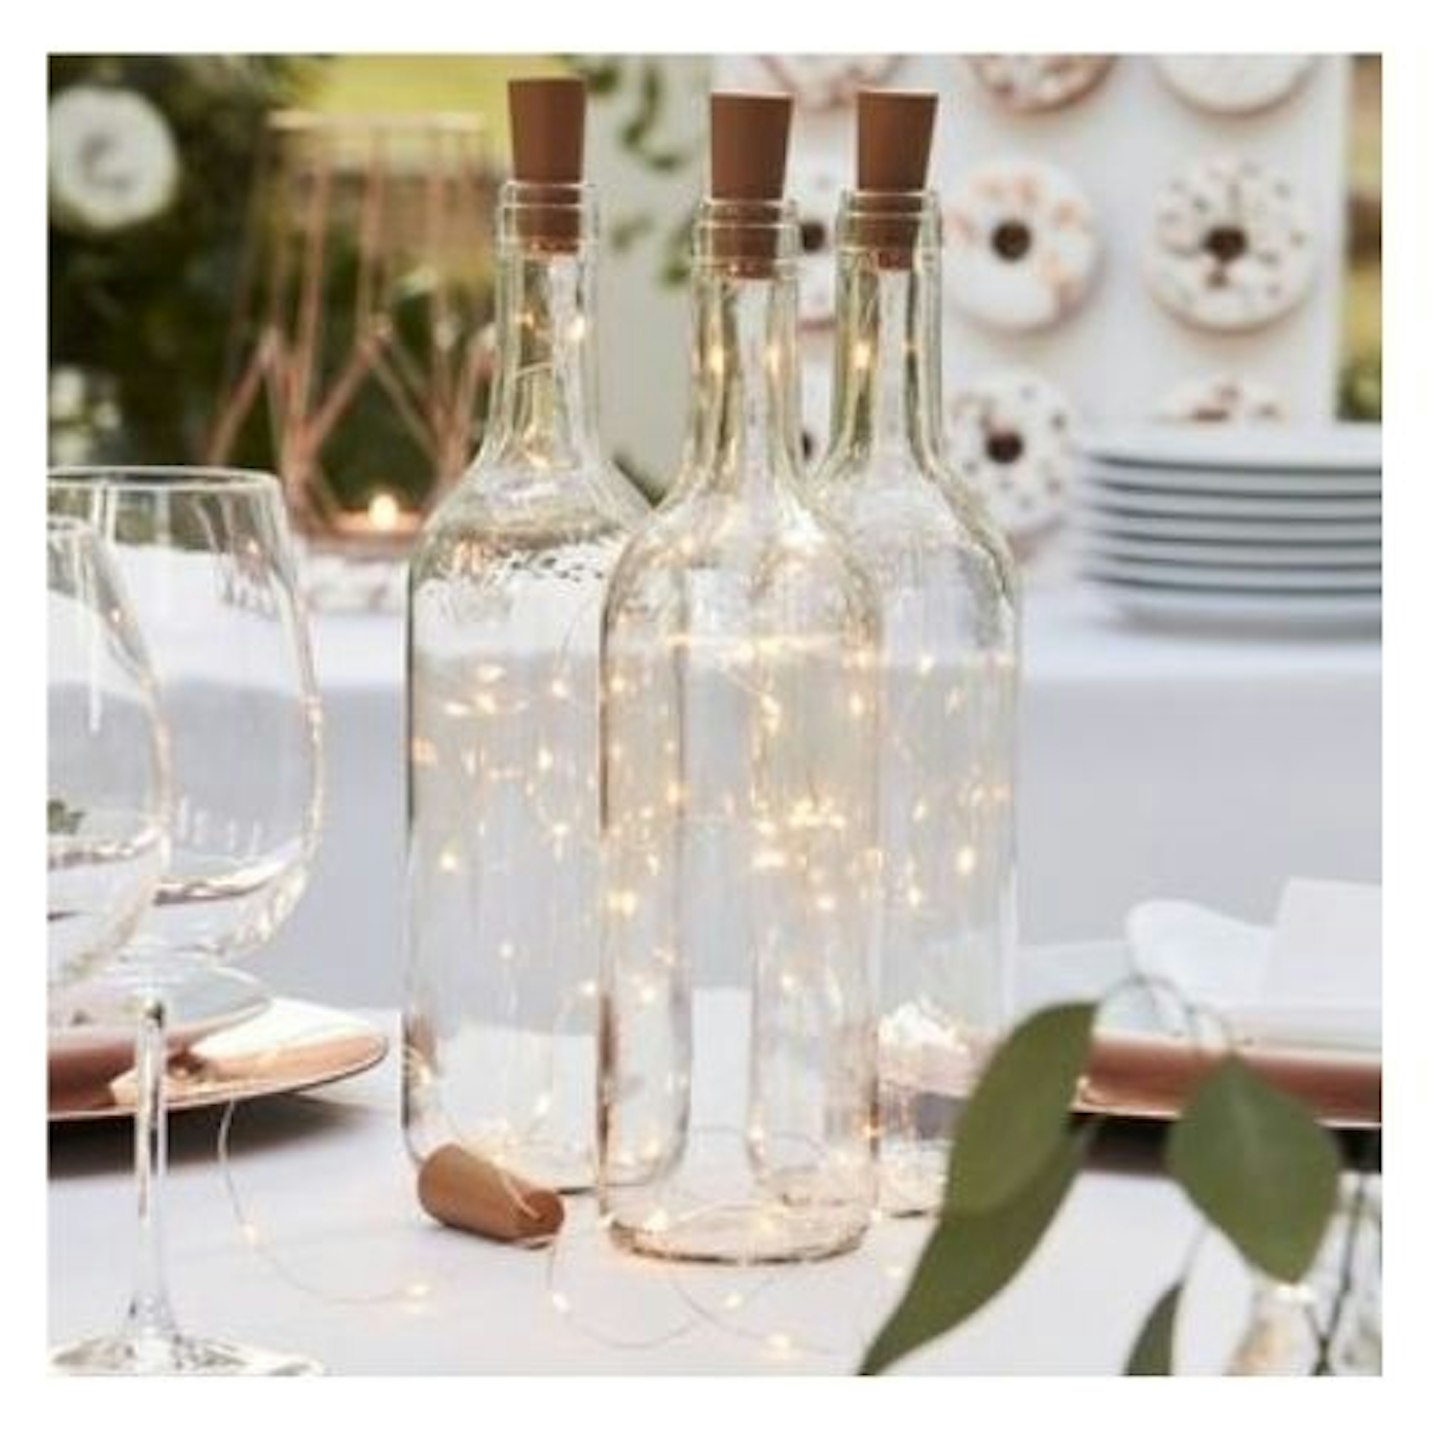 Glass bottle Table Lights on dinner table